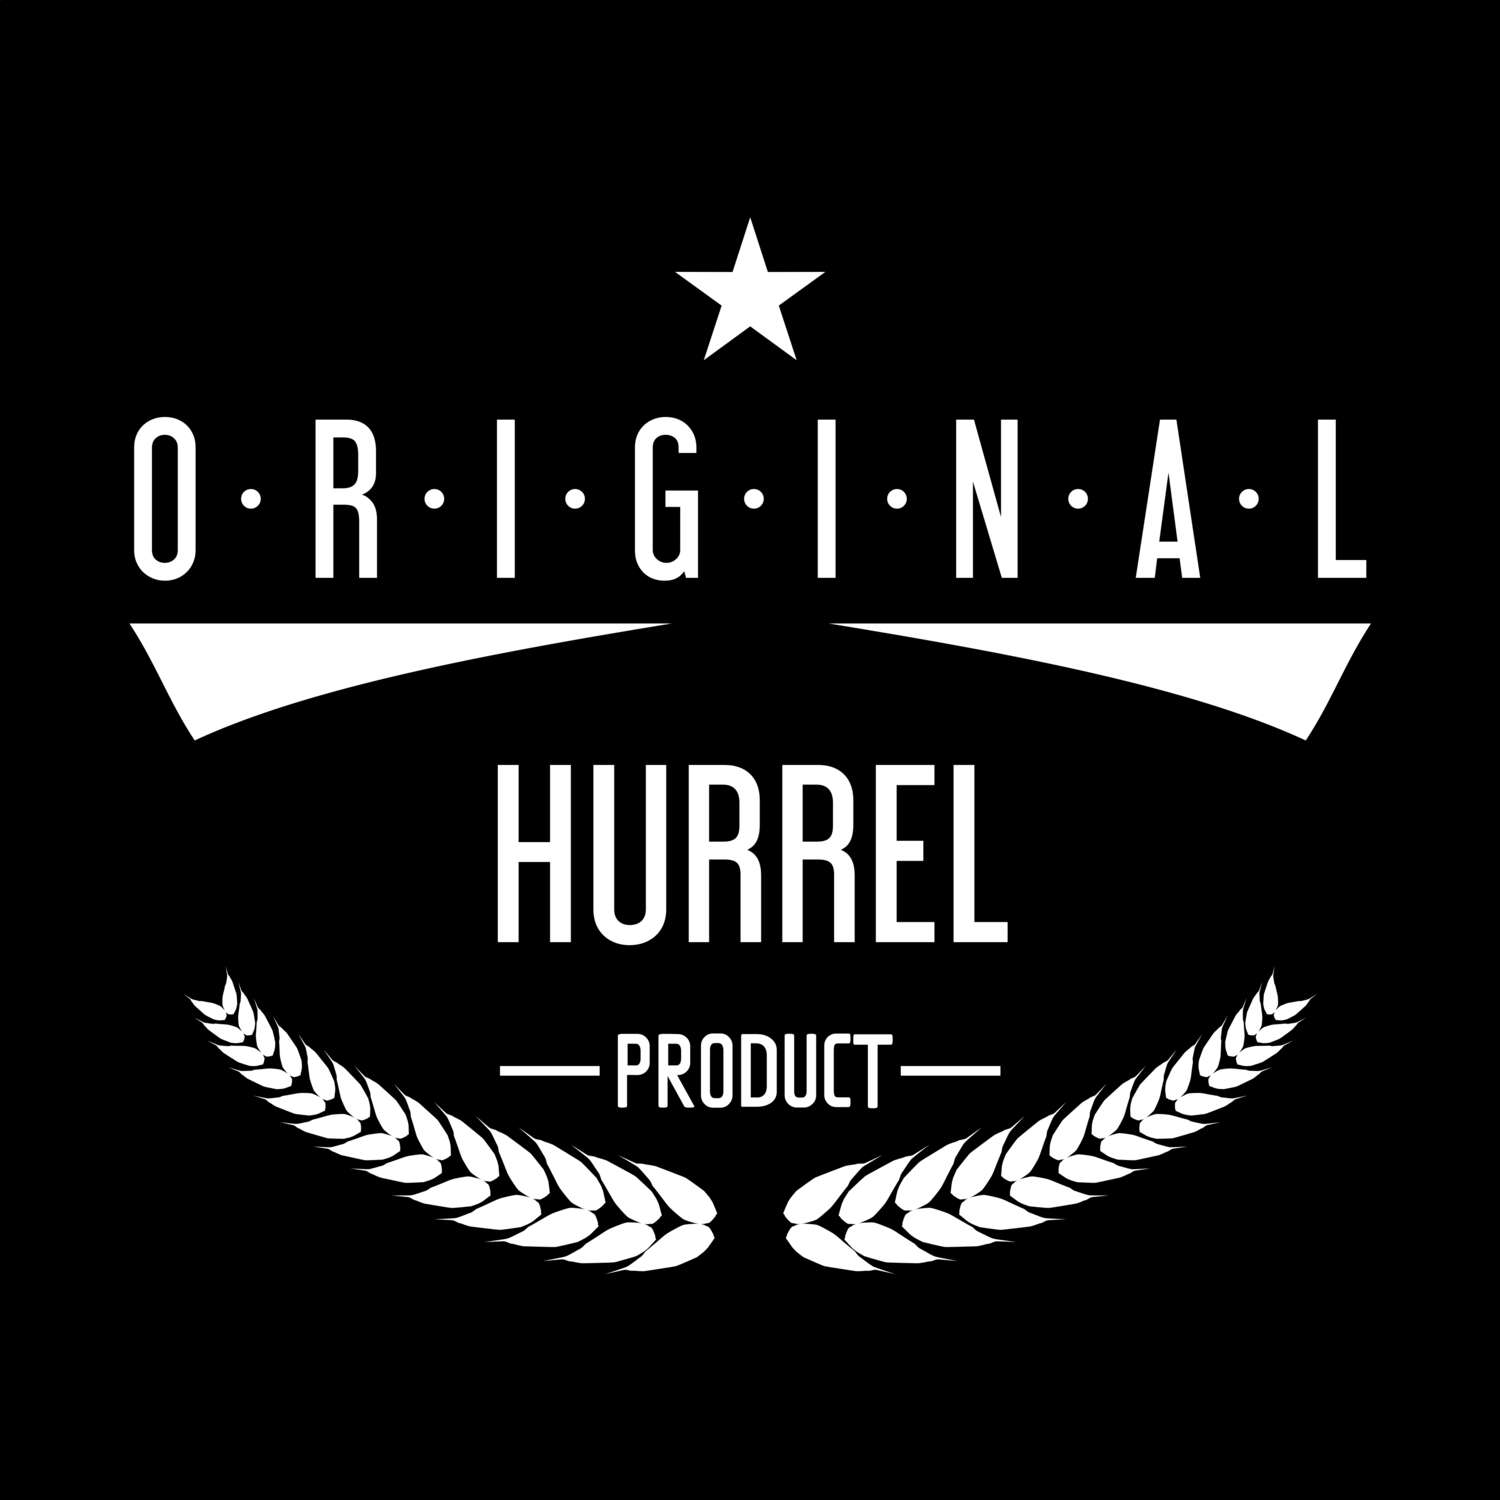 Hurrel T-Shirt »Original Product«